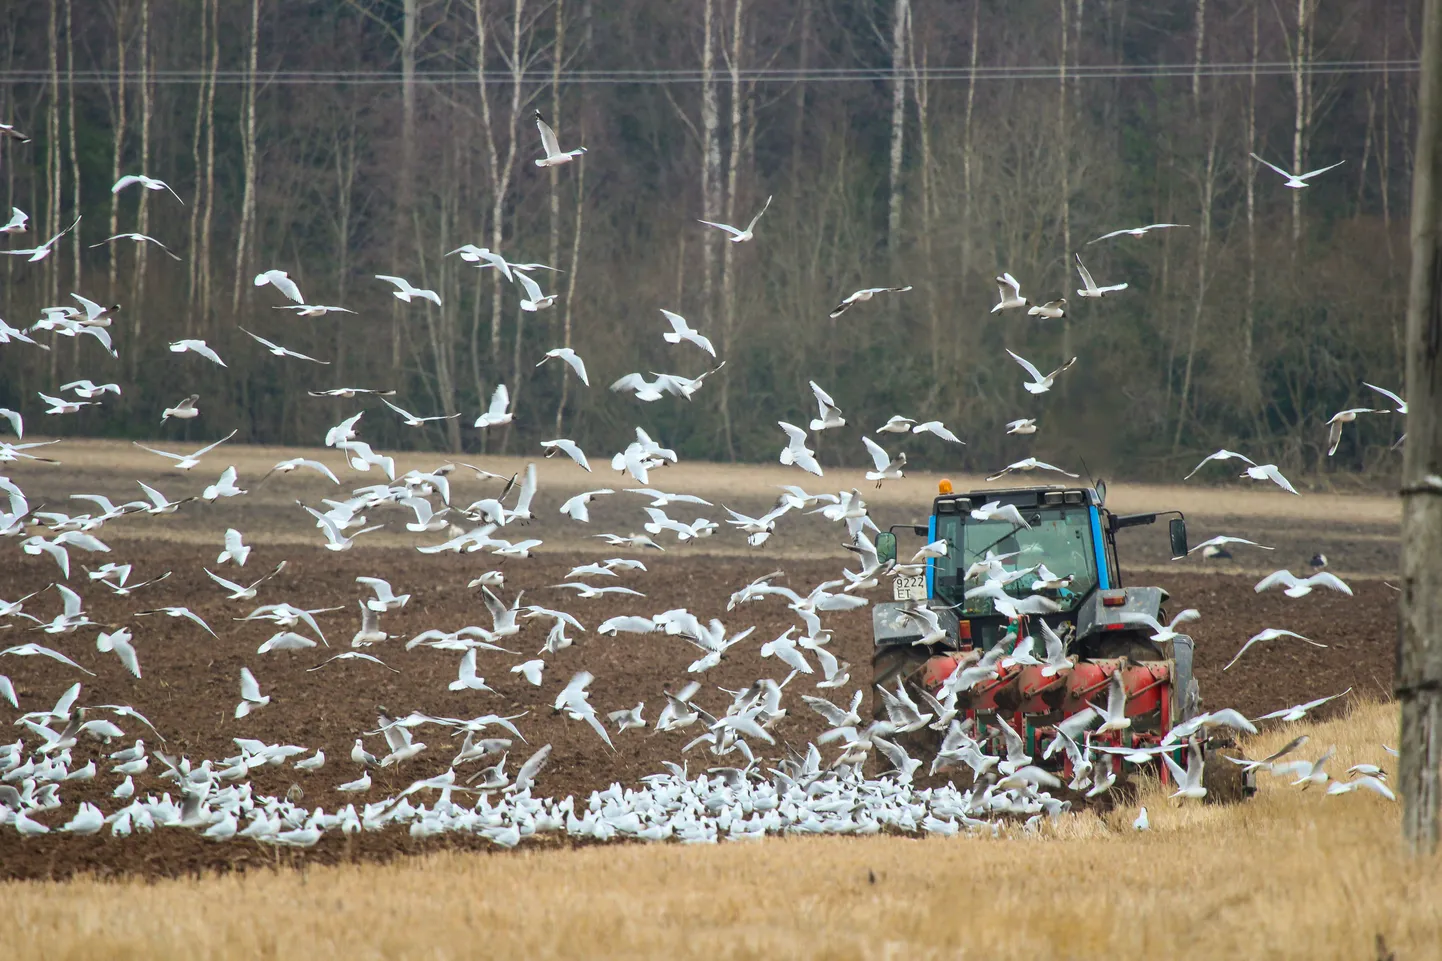 Põllumajandusuuringute Keskuse 2020. aasta kogumiku andmetel on Eestis 10 aastaga erinevate pestitsiidide arv ühe põllumullaproovi kohta kasvanud 0,61-st 7-ni.